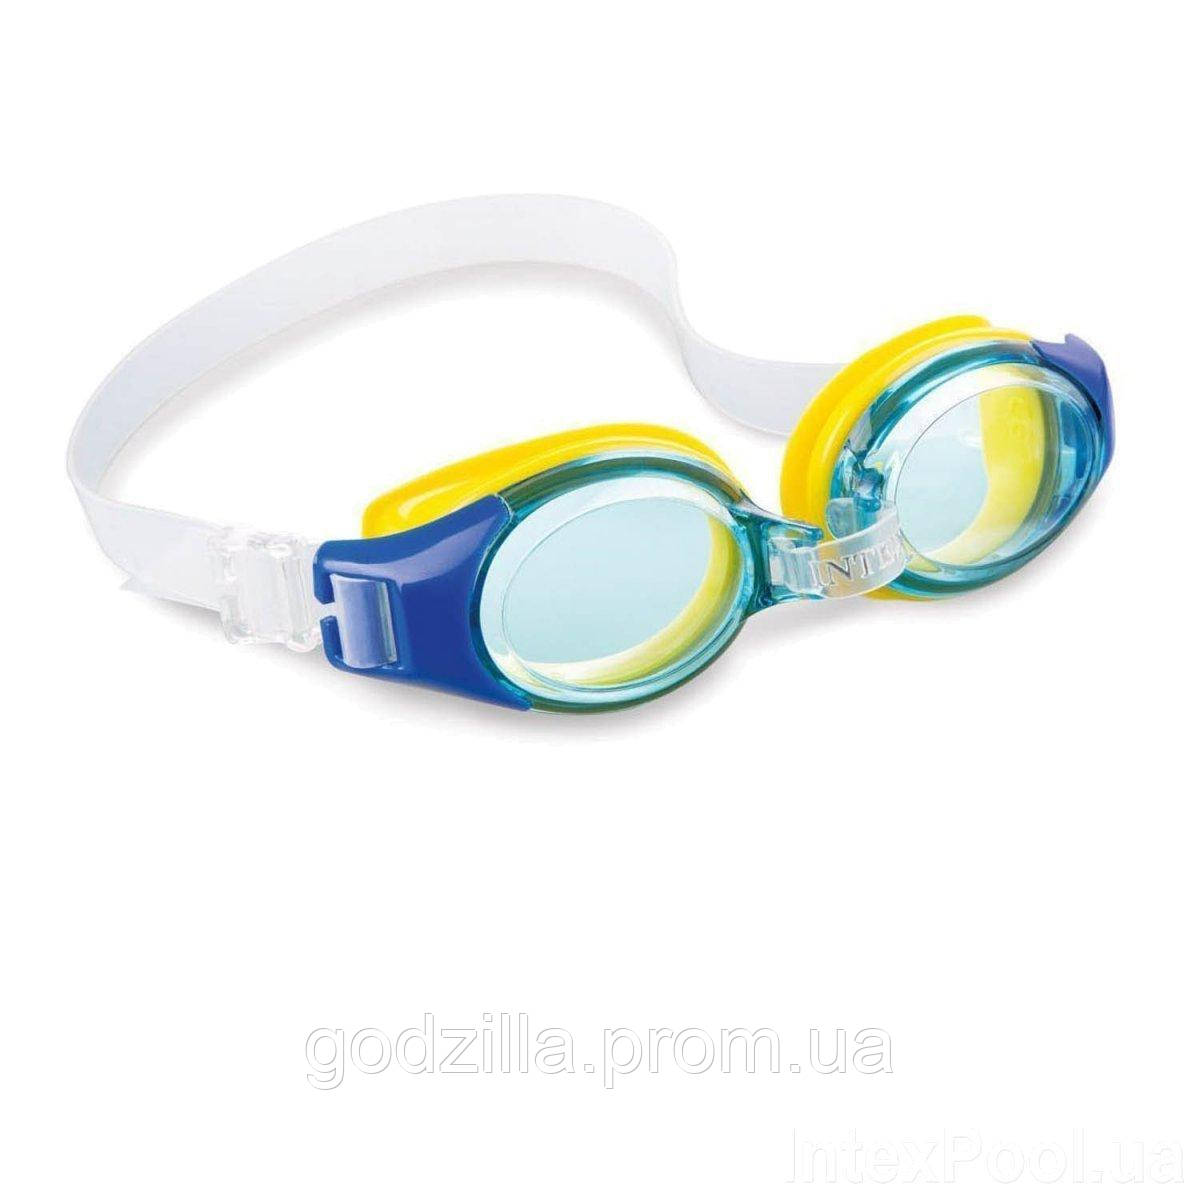 Дитячі окуляри для плавання Intex 55601, розмір S, (3+), обхват голови ≈ 50 см, блакитні